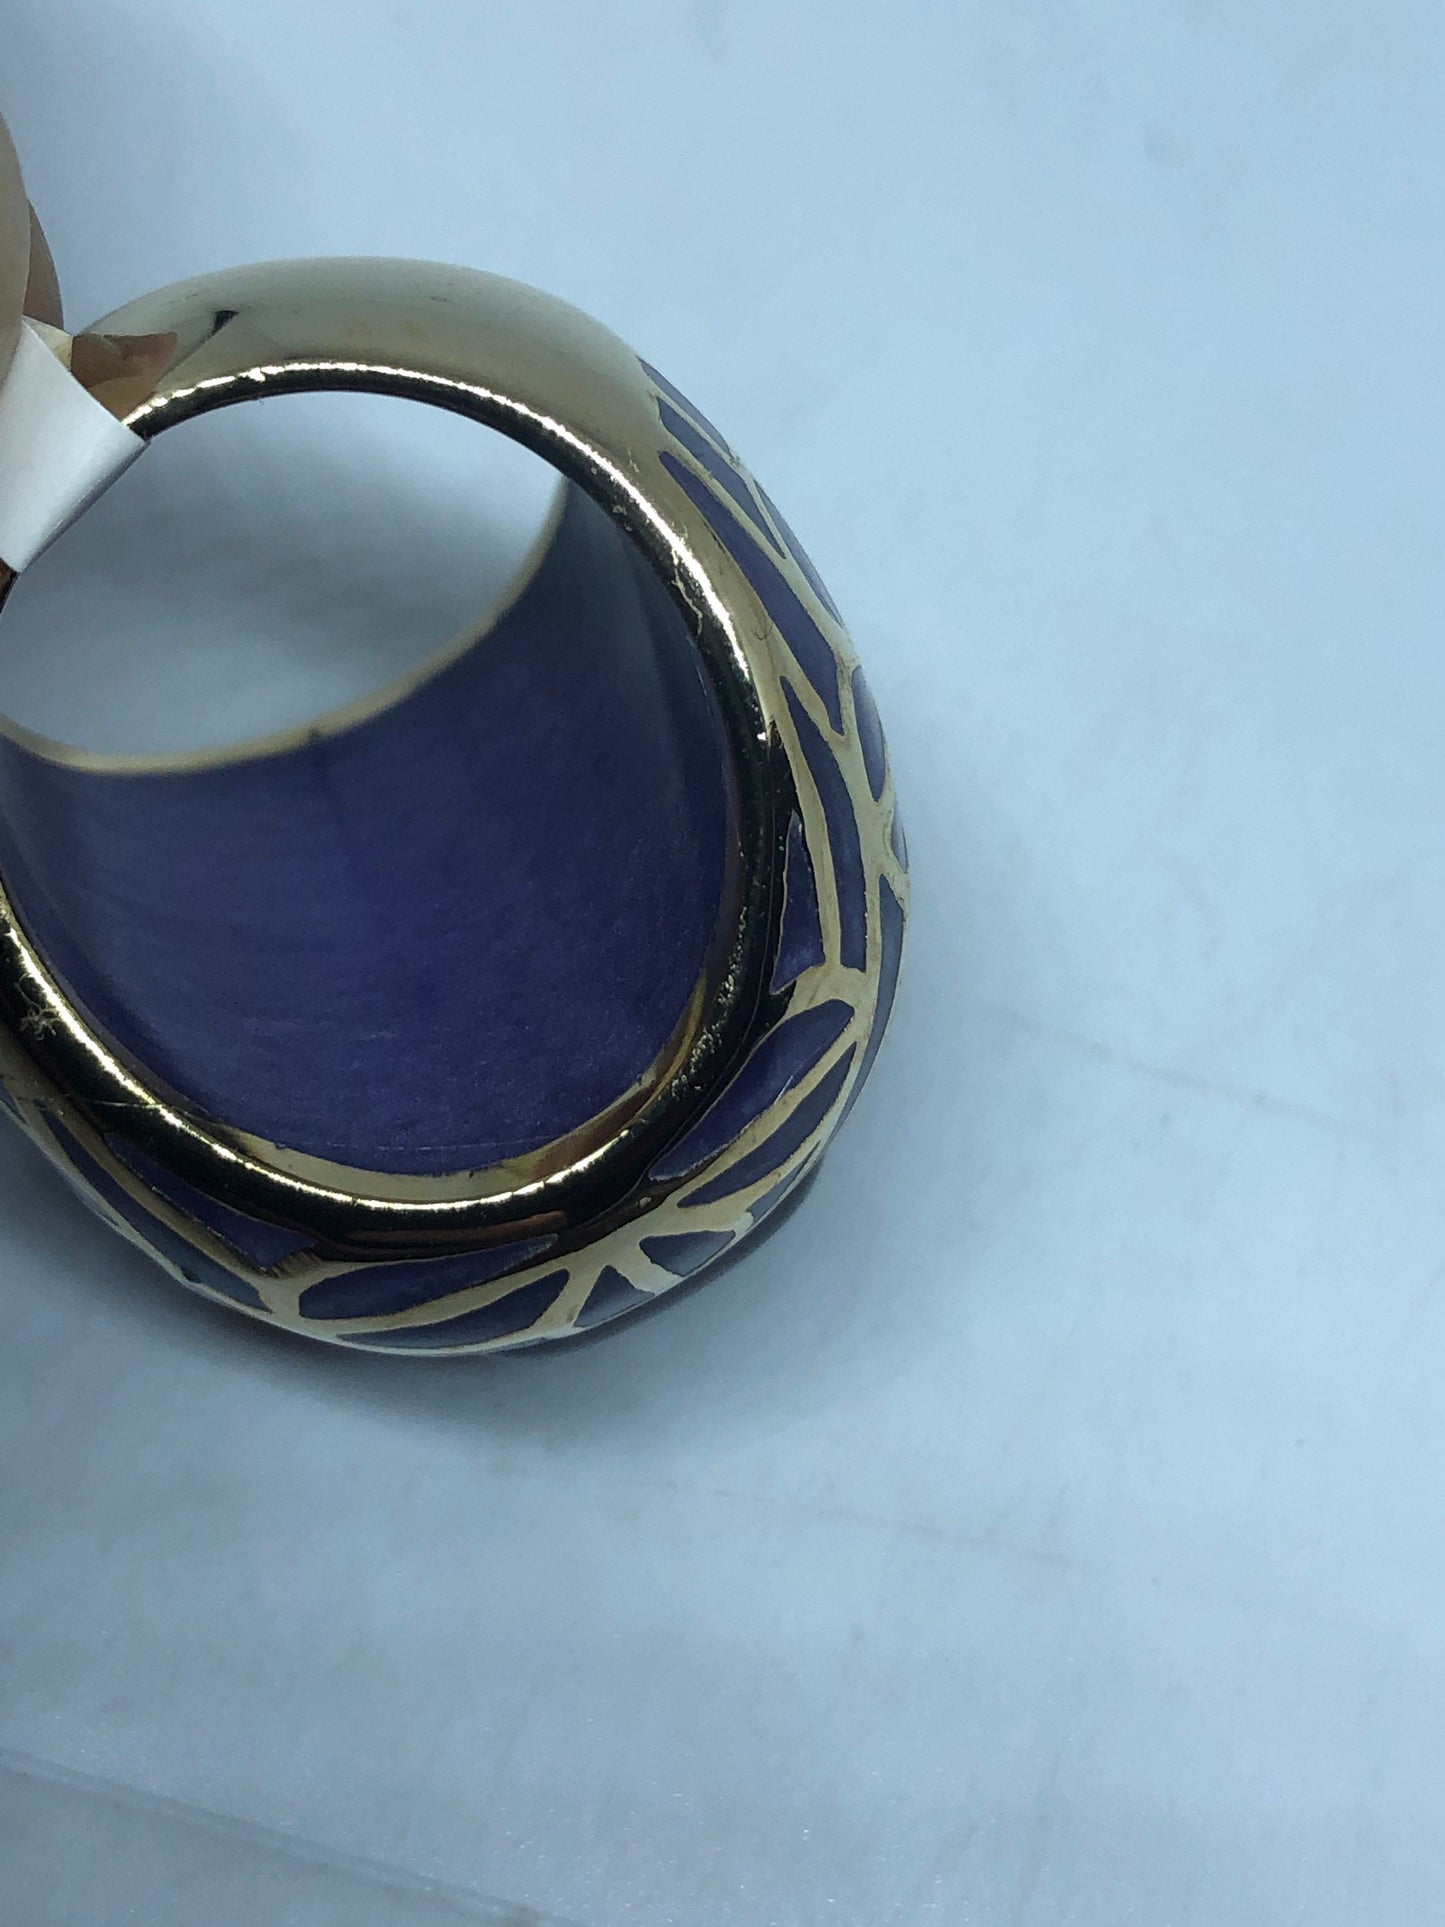 Vintage Purple Cats Eye Art Glass Enamel Ring